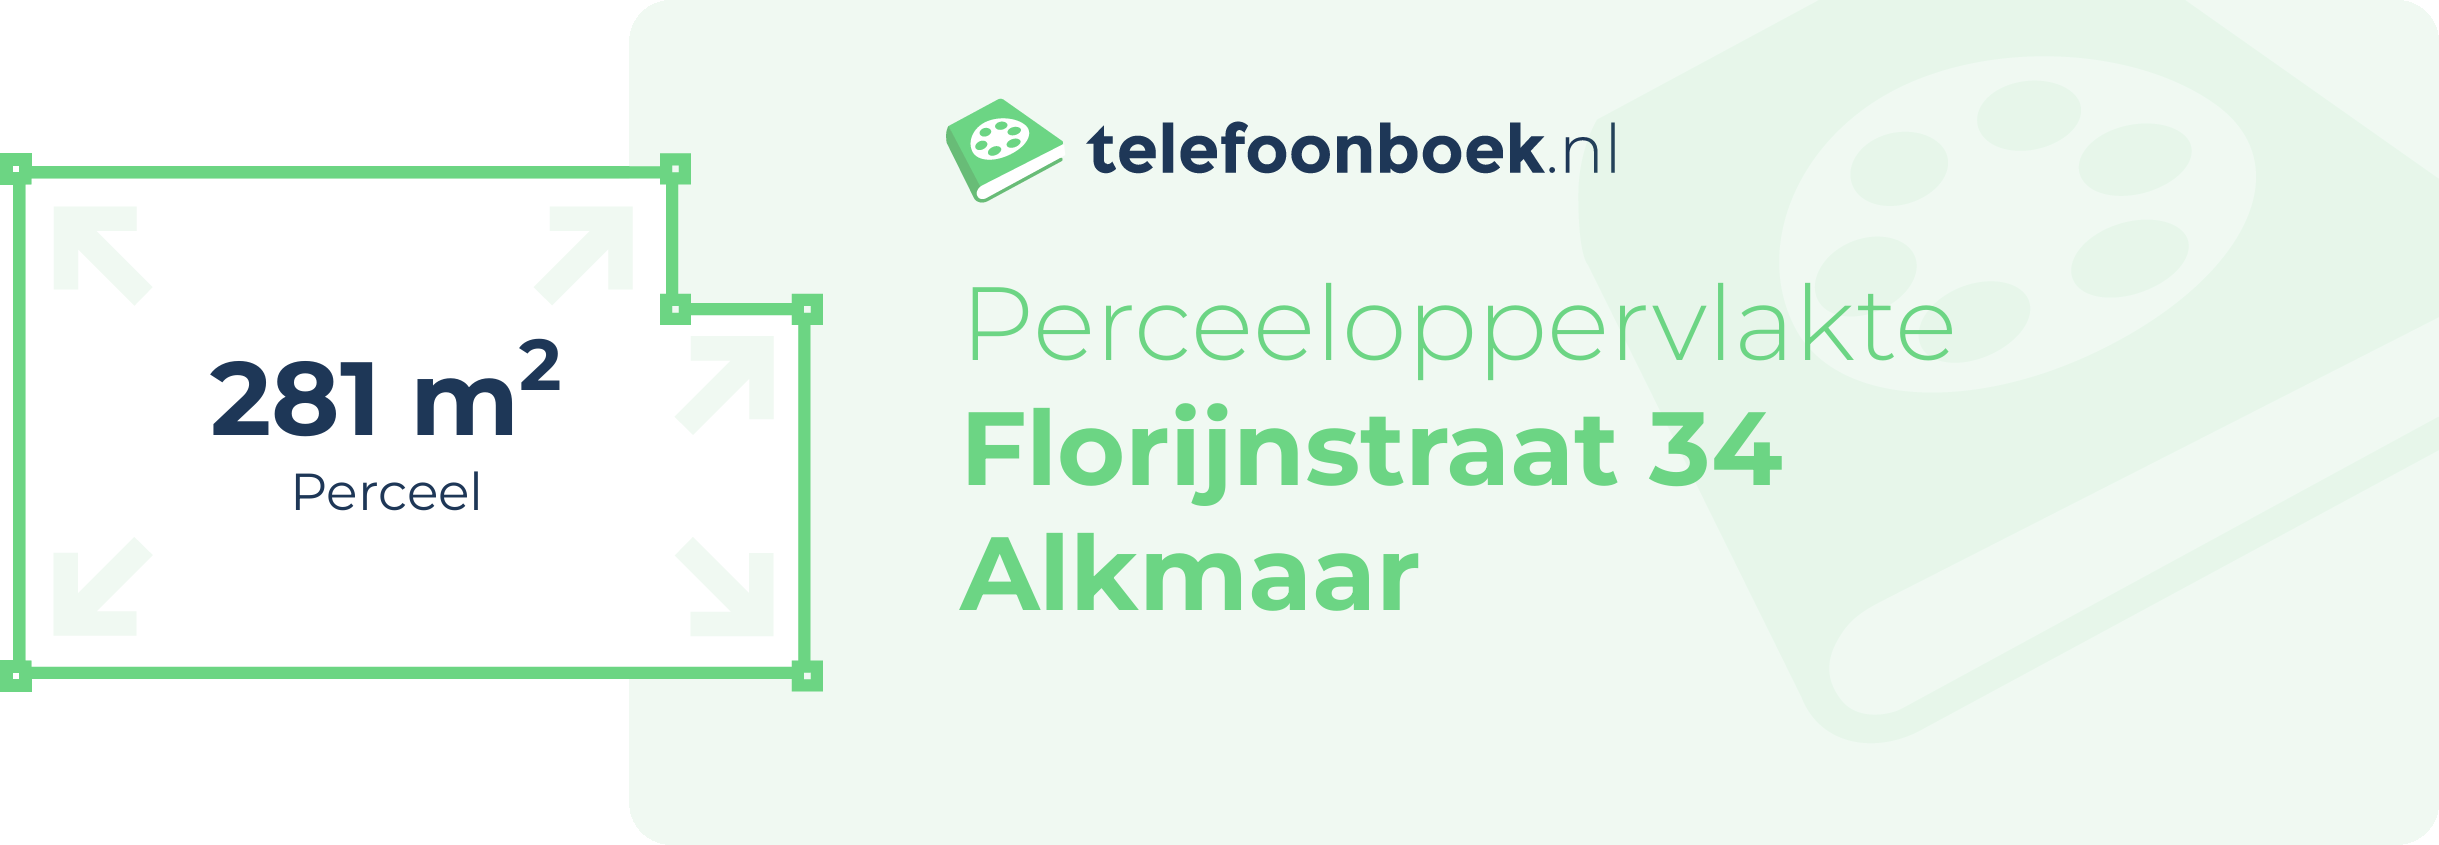 Perceeloppervlakte Florijnstraat 34 Alkmaar